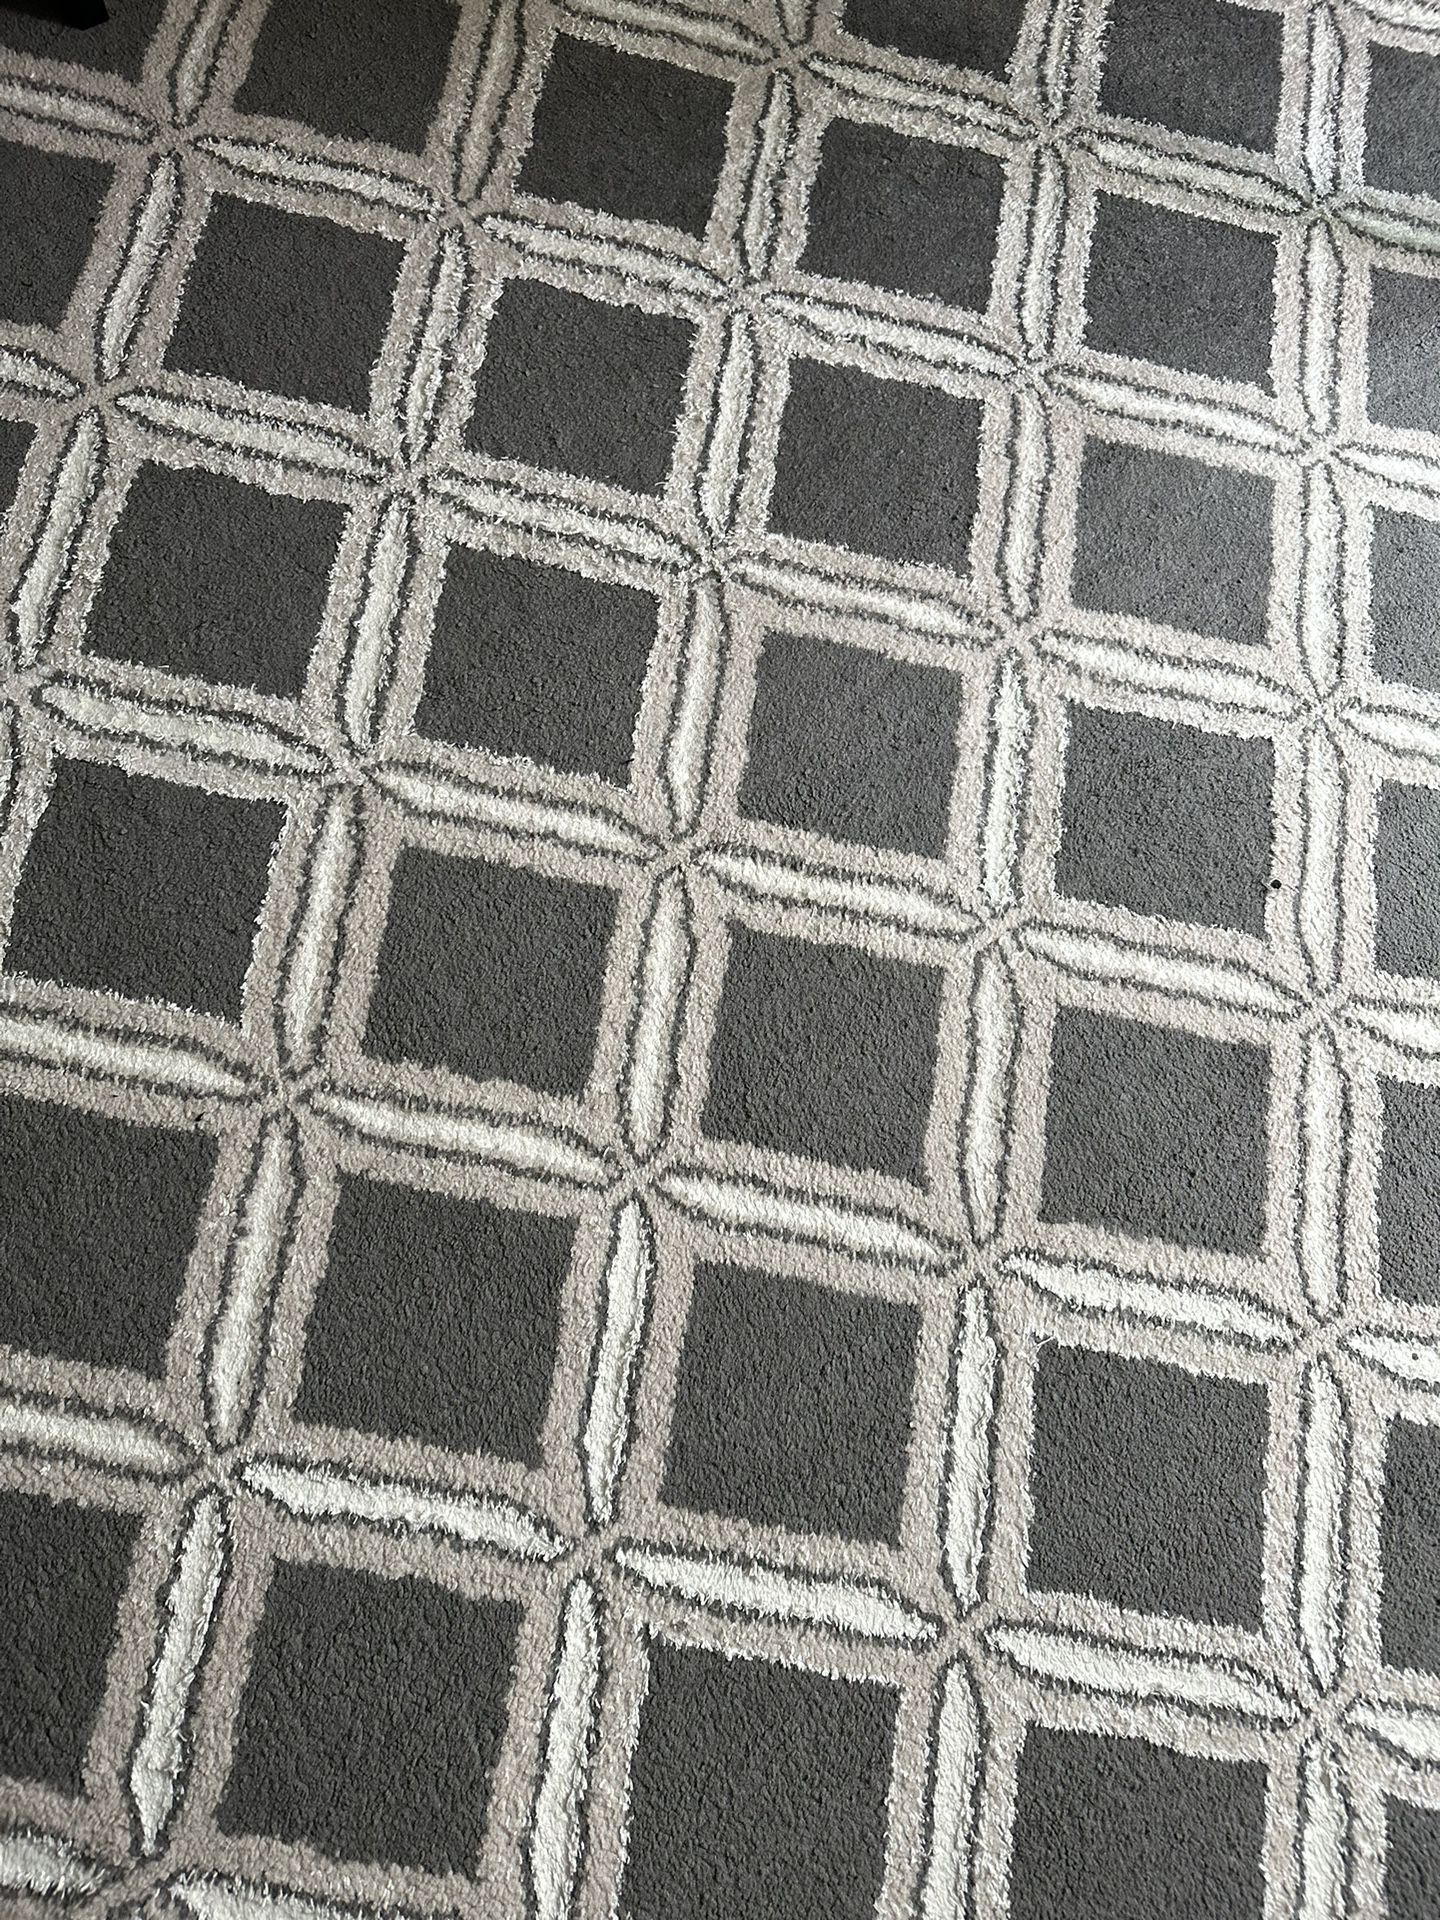 Grey Patterned Rug/carpet